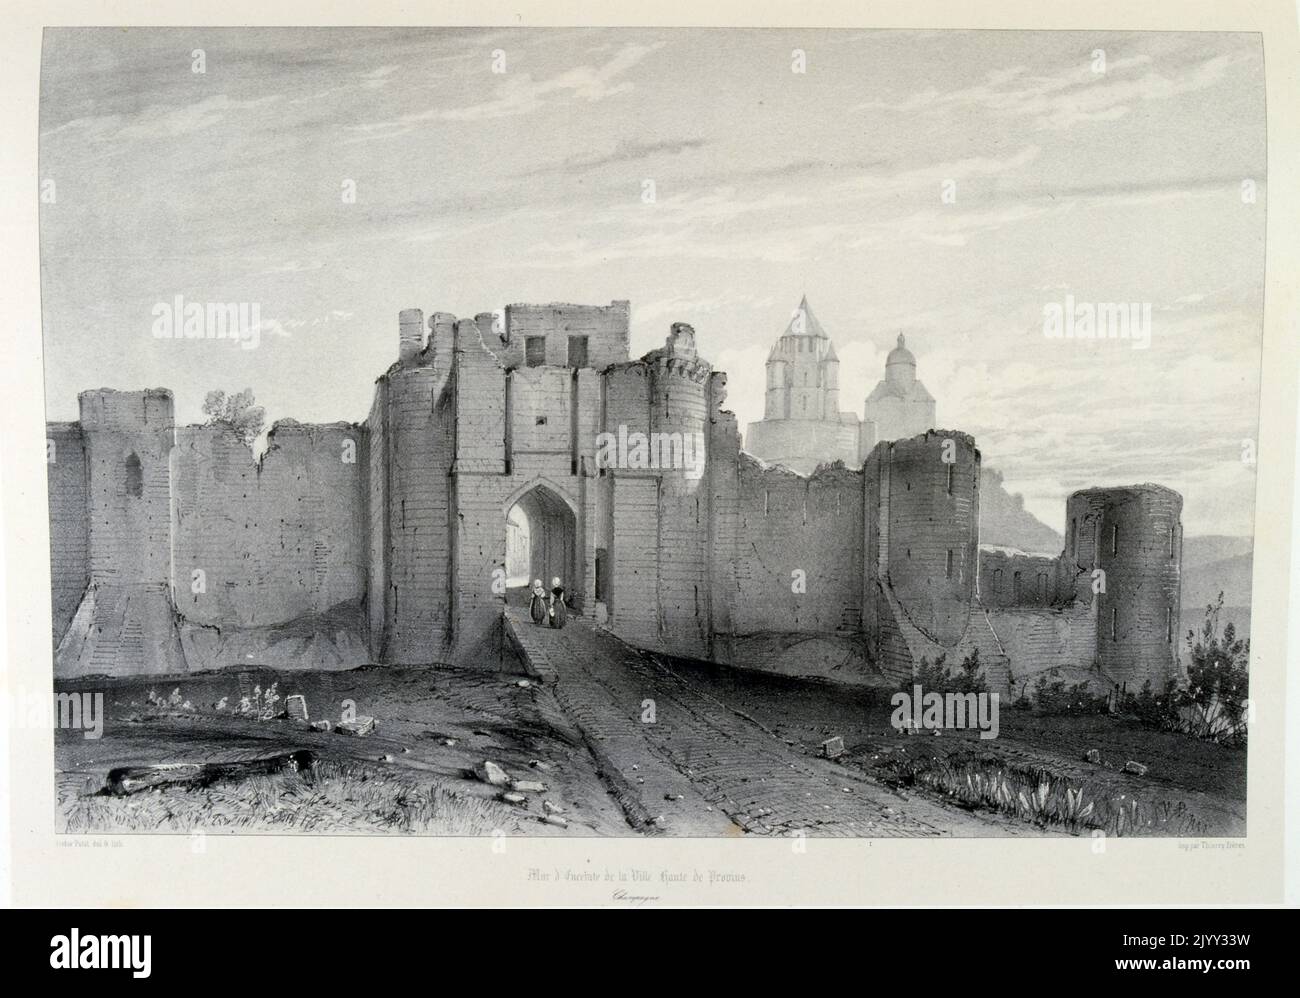 Aproximación a la ciudad de Provins, en el centro-norte de Francia cerca de París. Su arquitectura medieval incluye altas murallas con puertas fortificadas. siglo 19th, 1857 Foto de stock